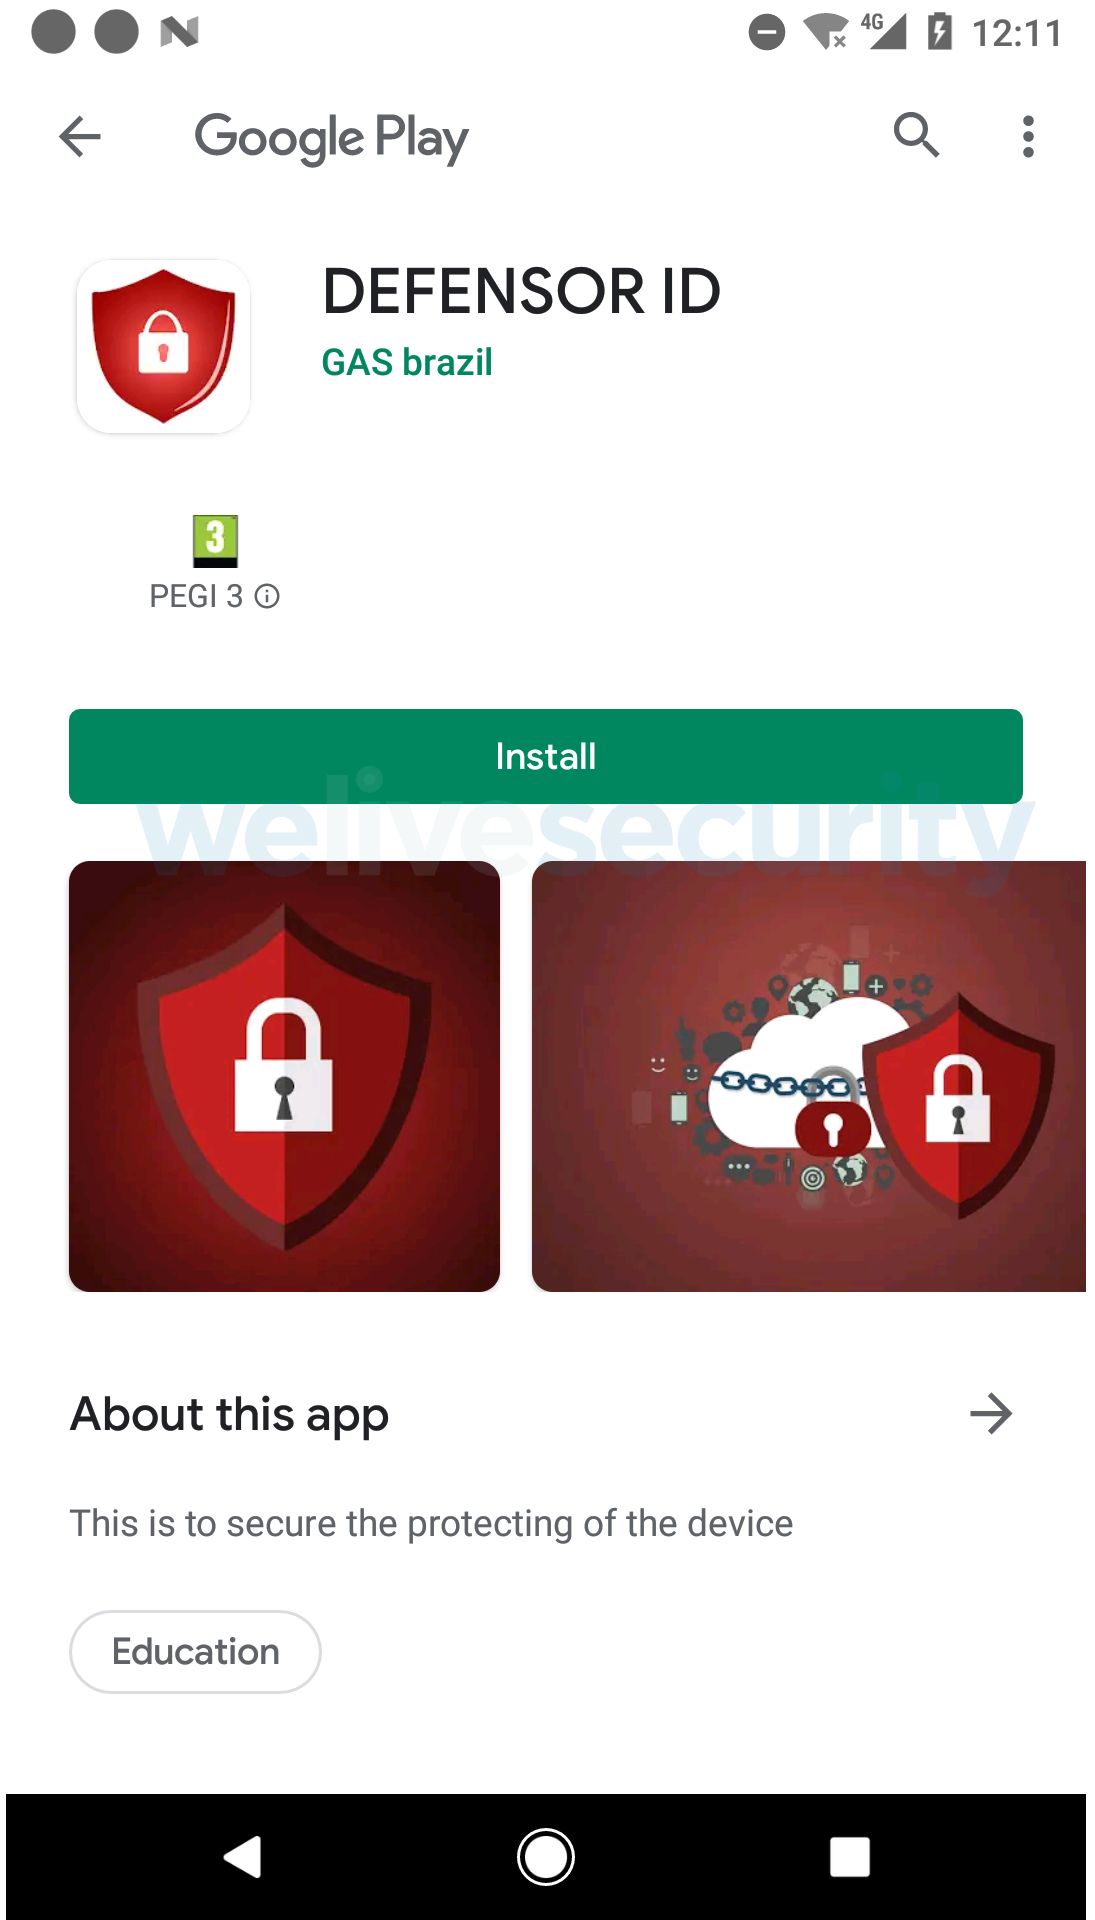 Abbildung 3: Die DEFENSOR ID App im Google Play Store - Englische Version